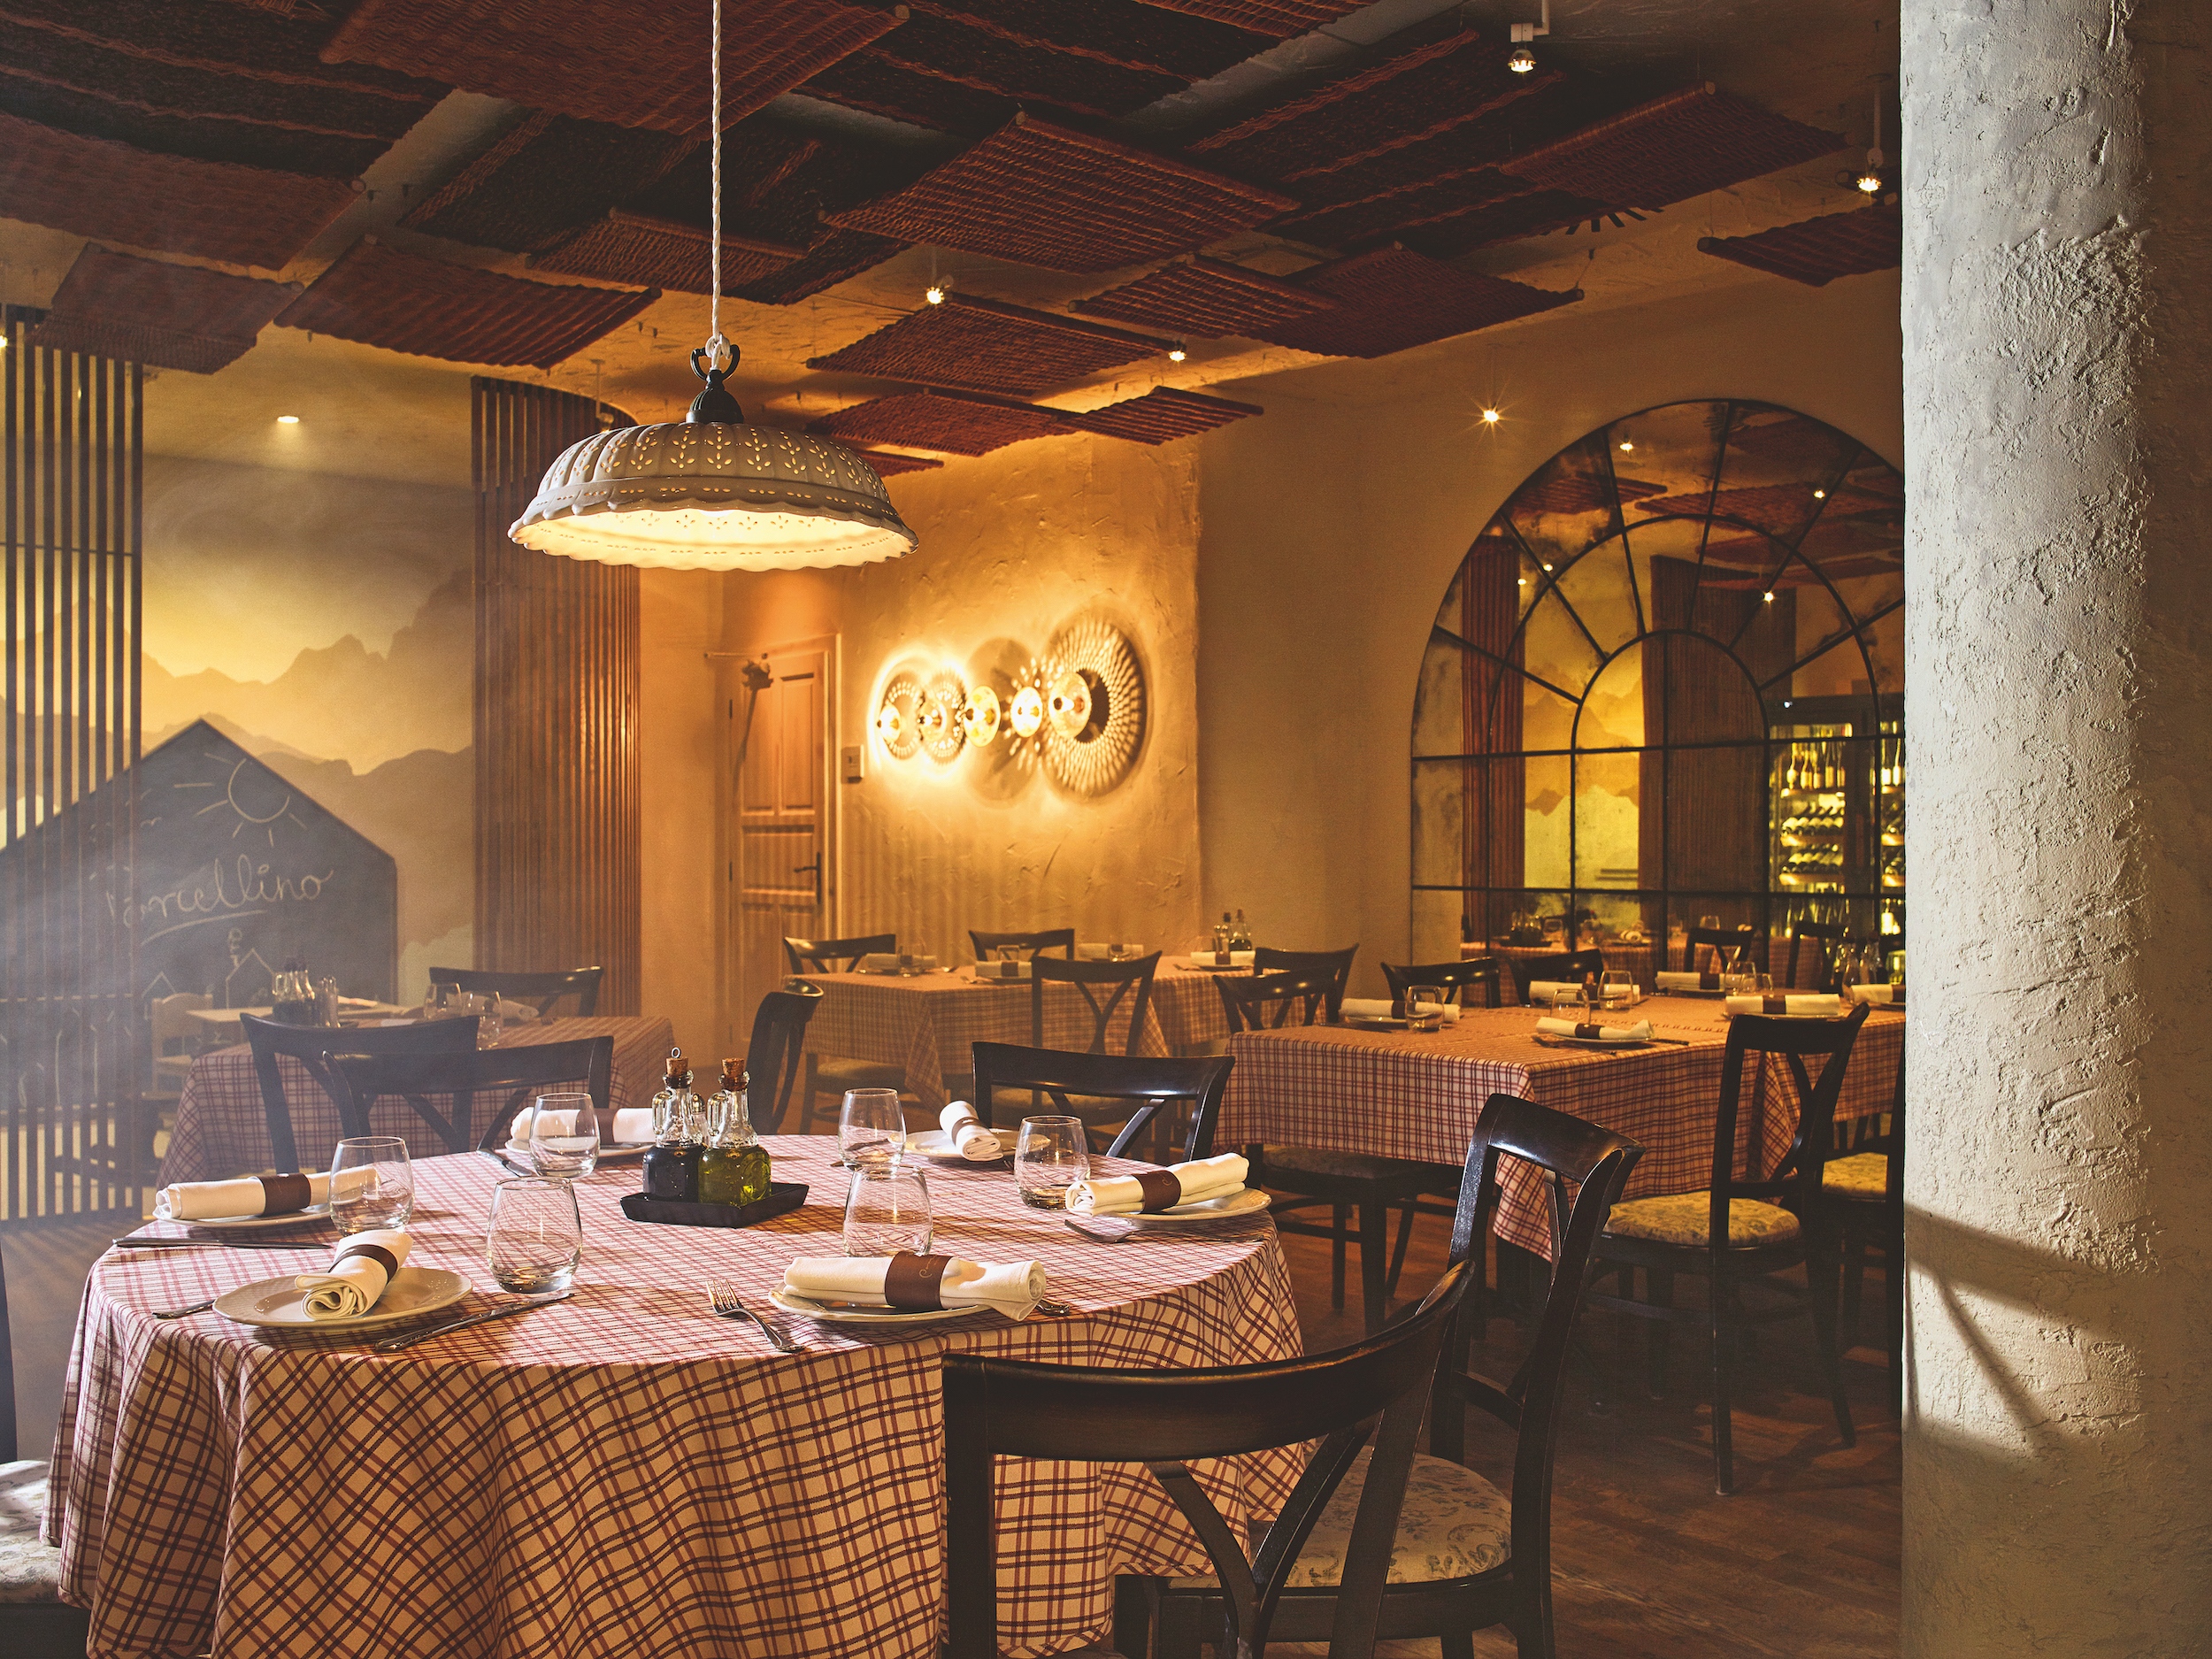 A Porcellino étterem ikonikussá vált egyedi réztálakból tervezett falikarjai a klasszikus olasz hangulat és a modern design keverékeként jelennek meg. Fotó: Barbay Csaba